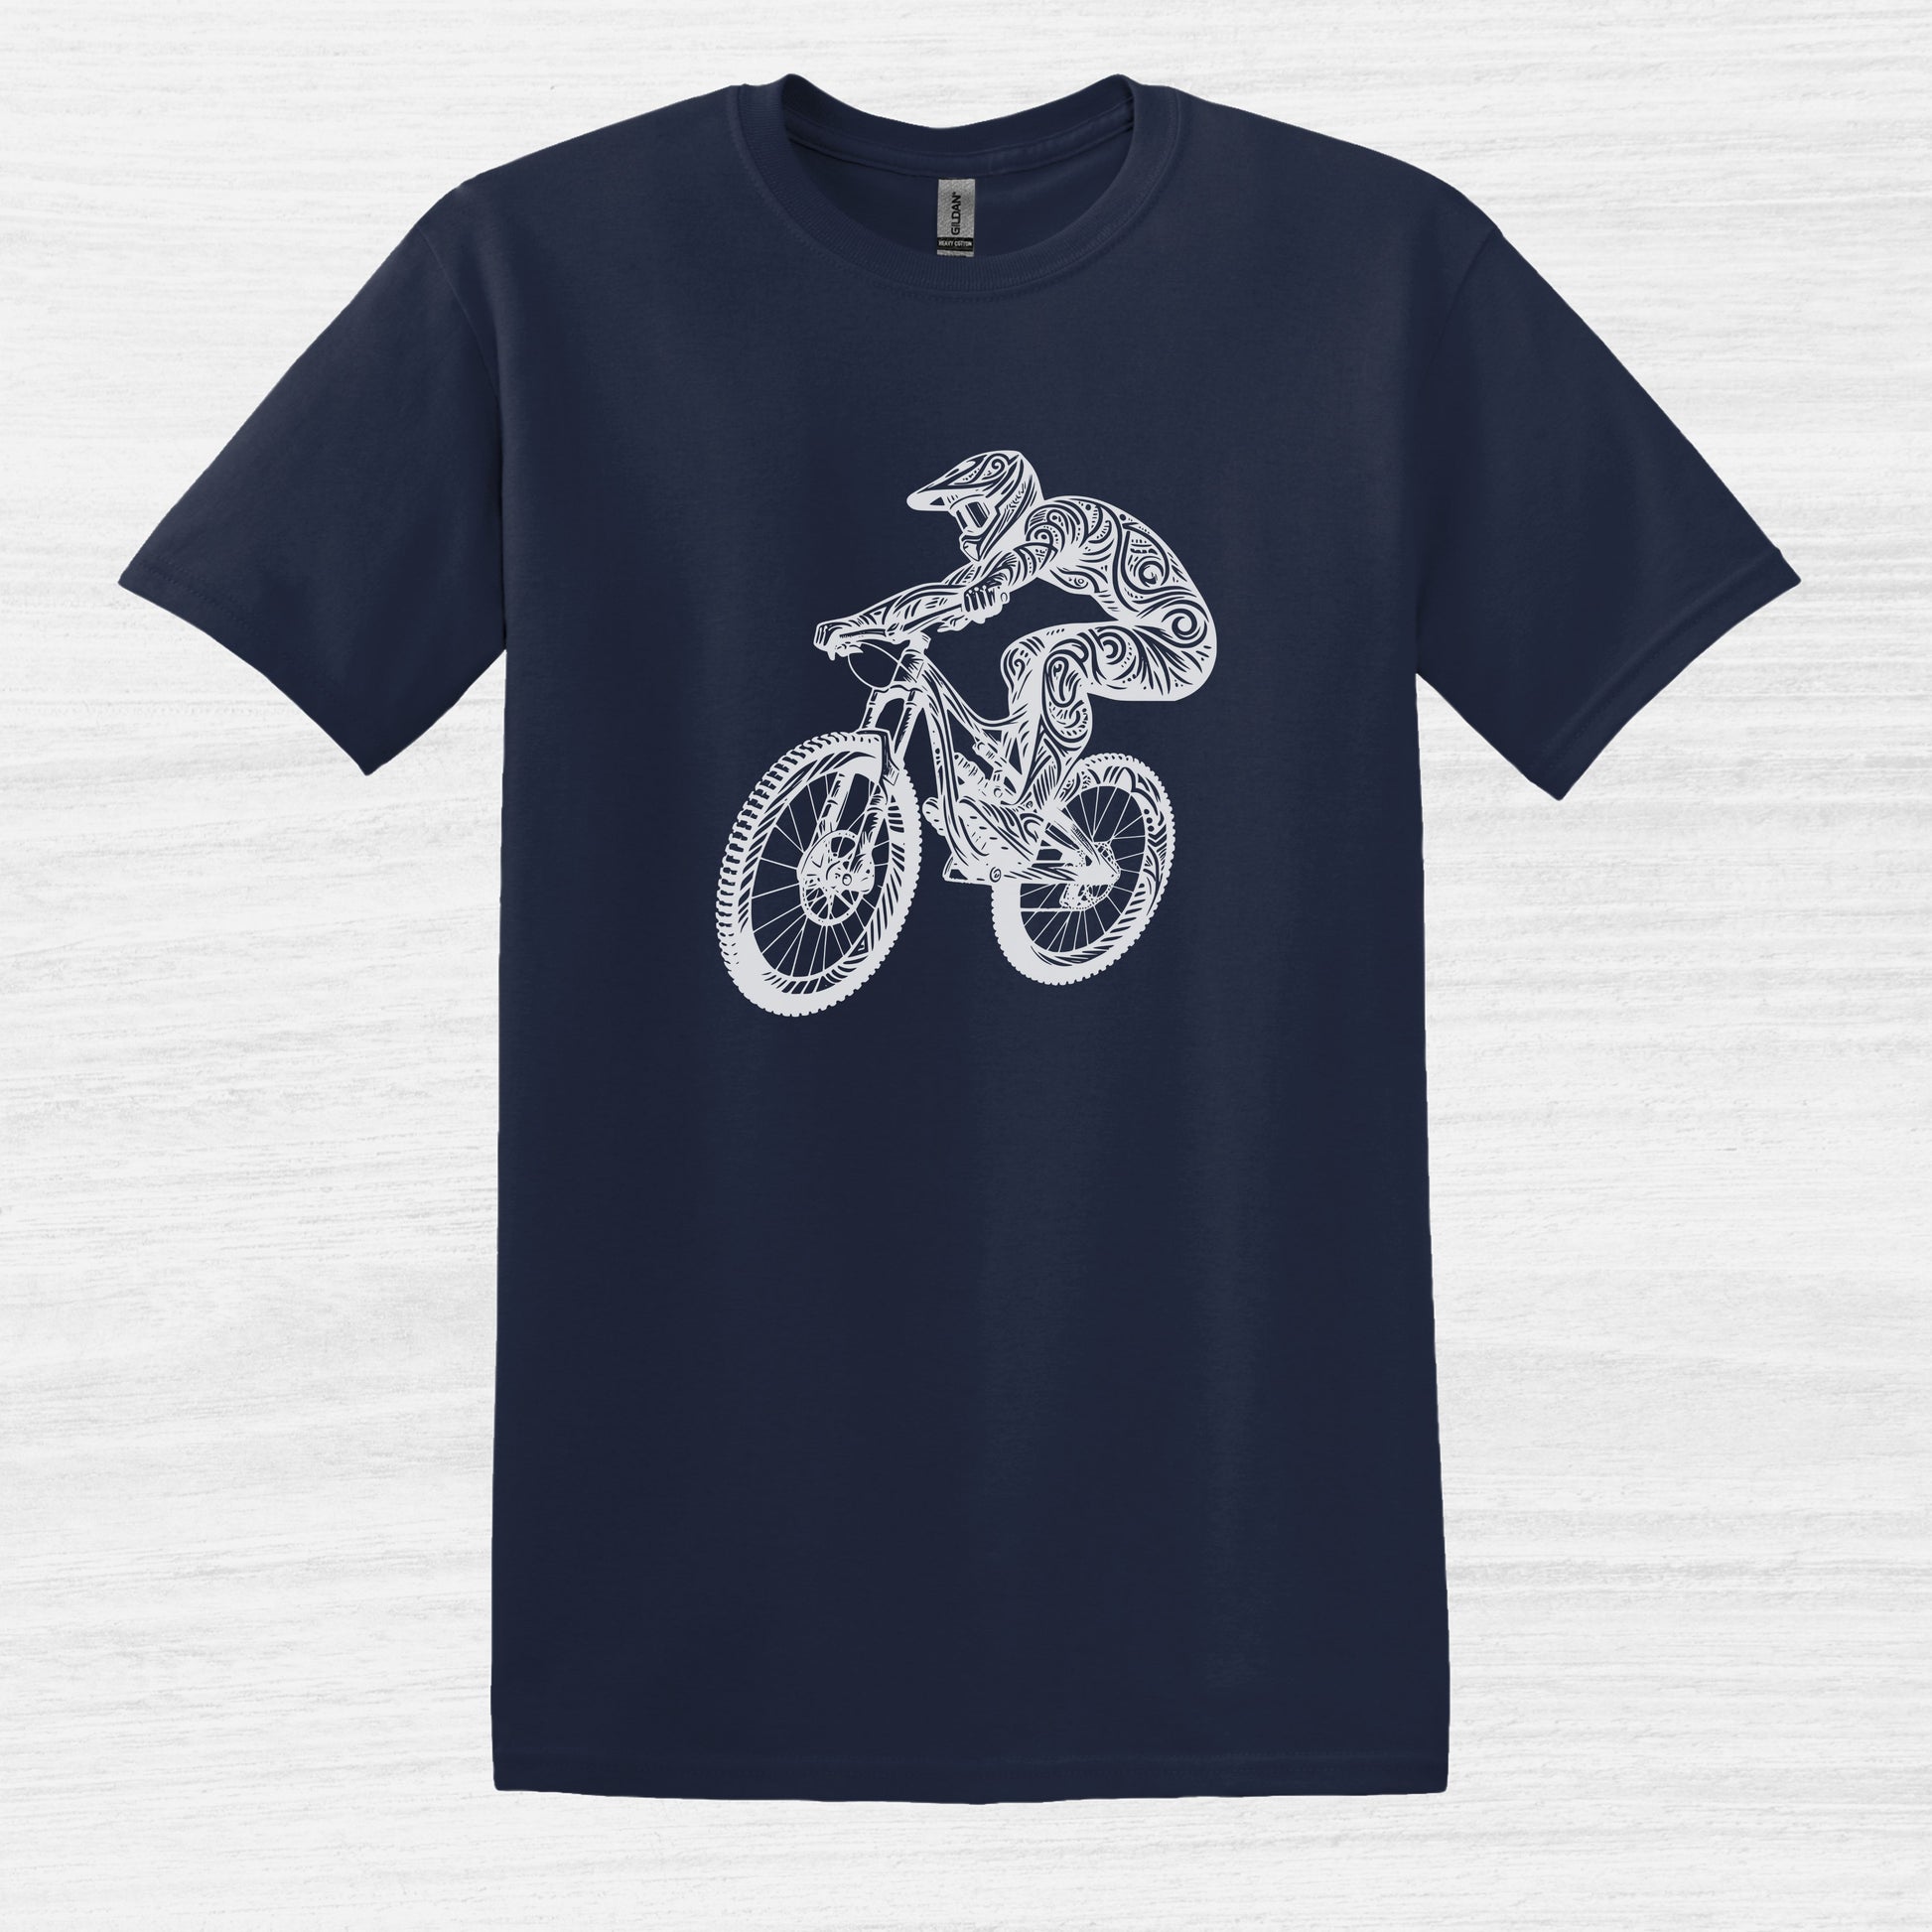 Bike Bliss BMX Dirt Bike Jump T-Shirt for Men Navy 2